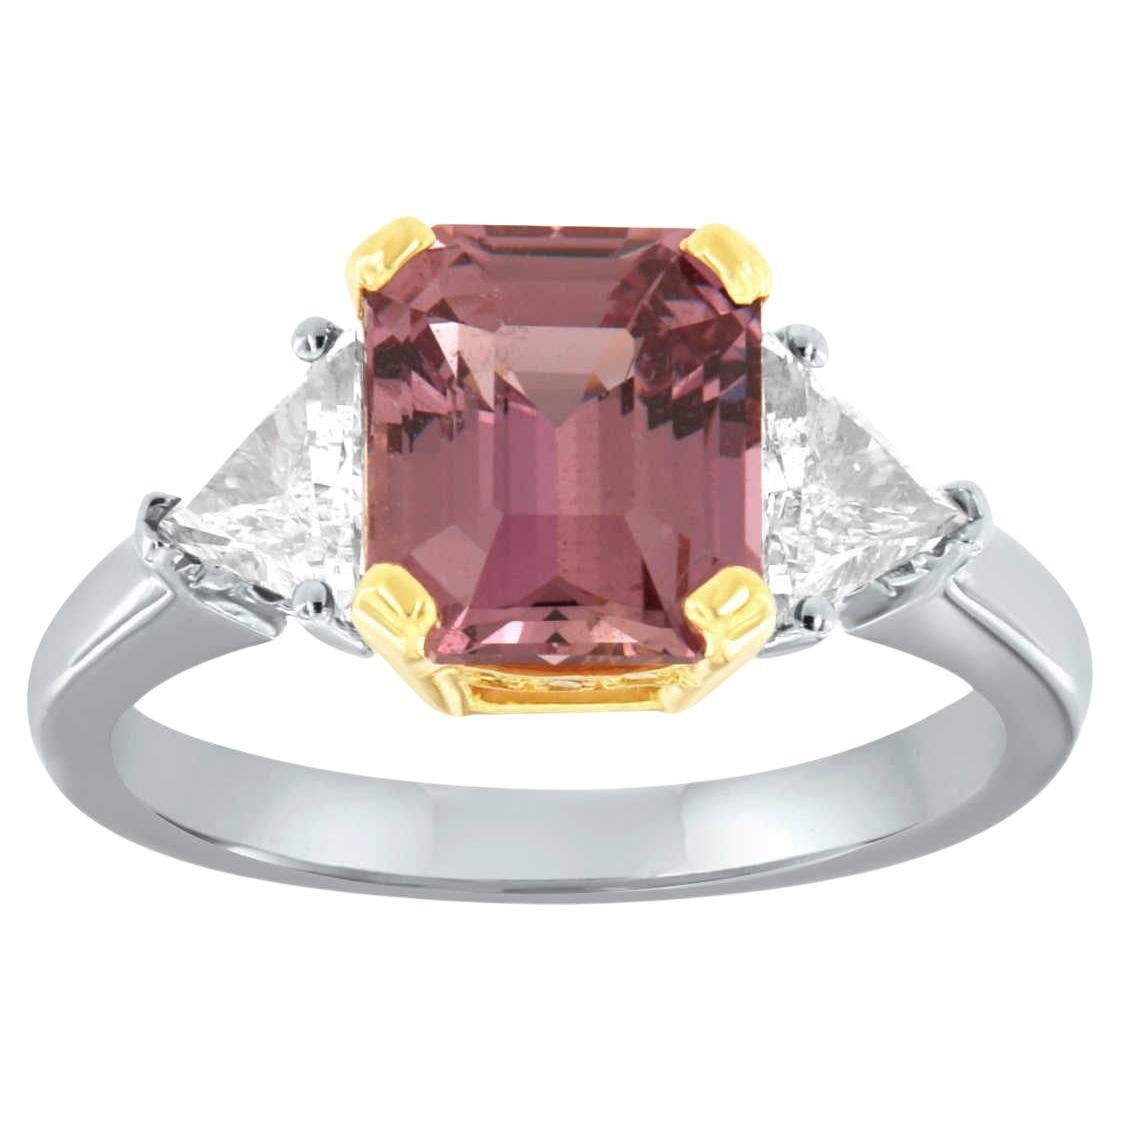 Bague en or 14 carats avec diamants et émeraude rose violacé de 3,21 carats certifiée par le GIA